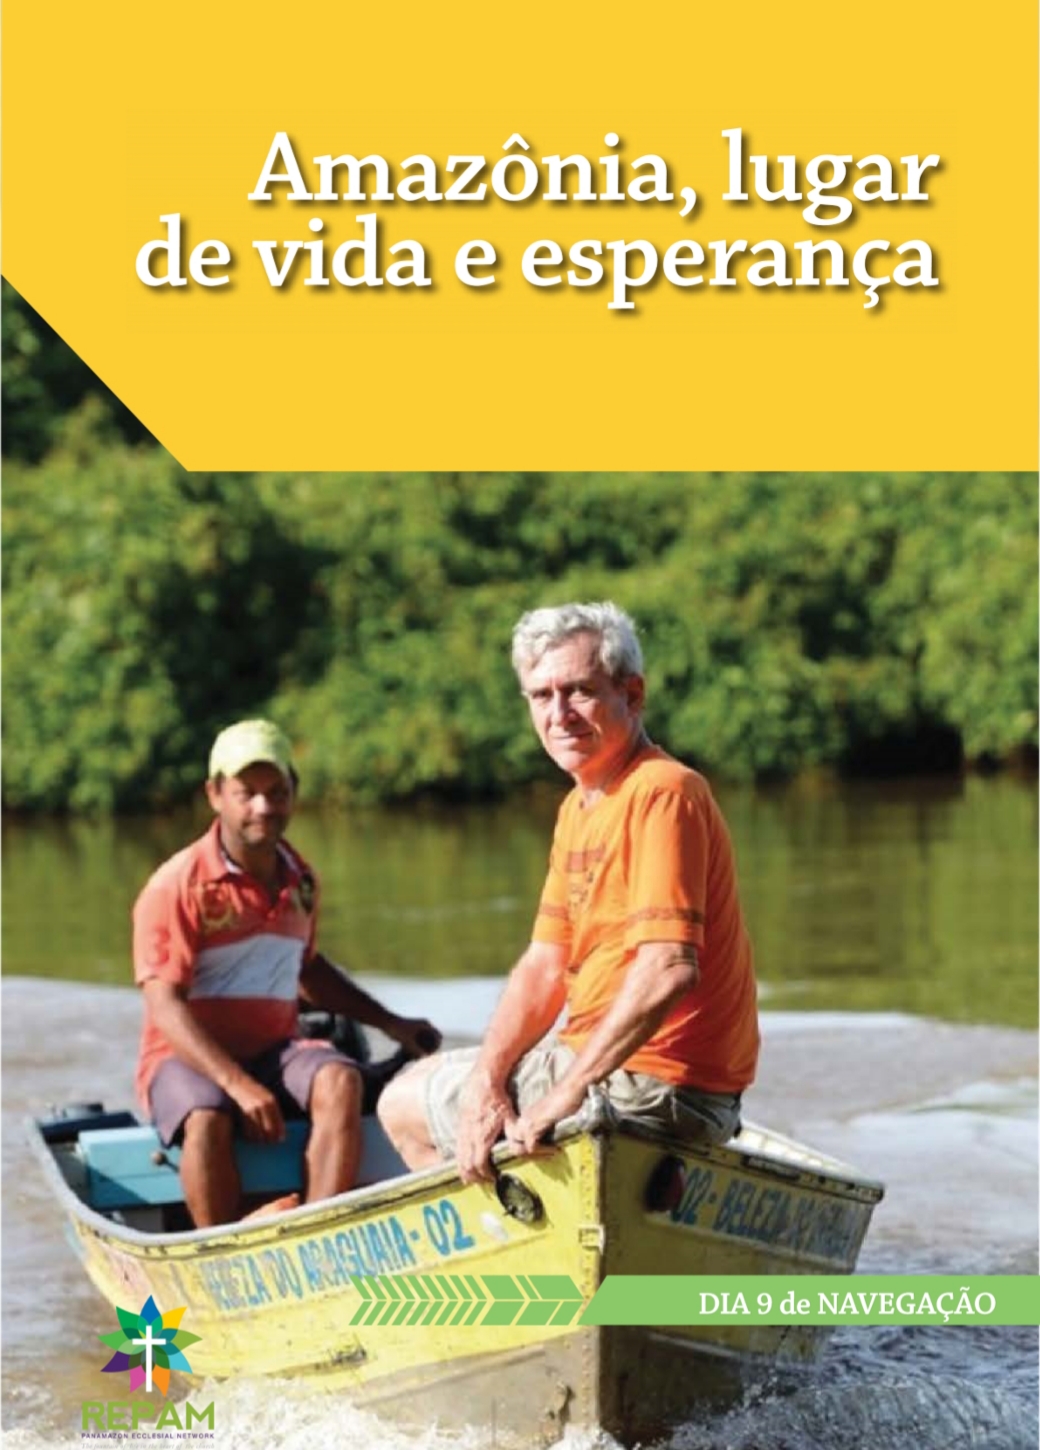 40 Dias pelo Rio: Navegando Juntos a Boa Nova de  Deus a Caminho do  Sinodo  Amazônico.  Dia  9 de Navegação.